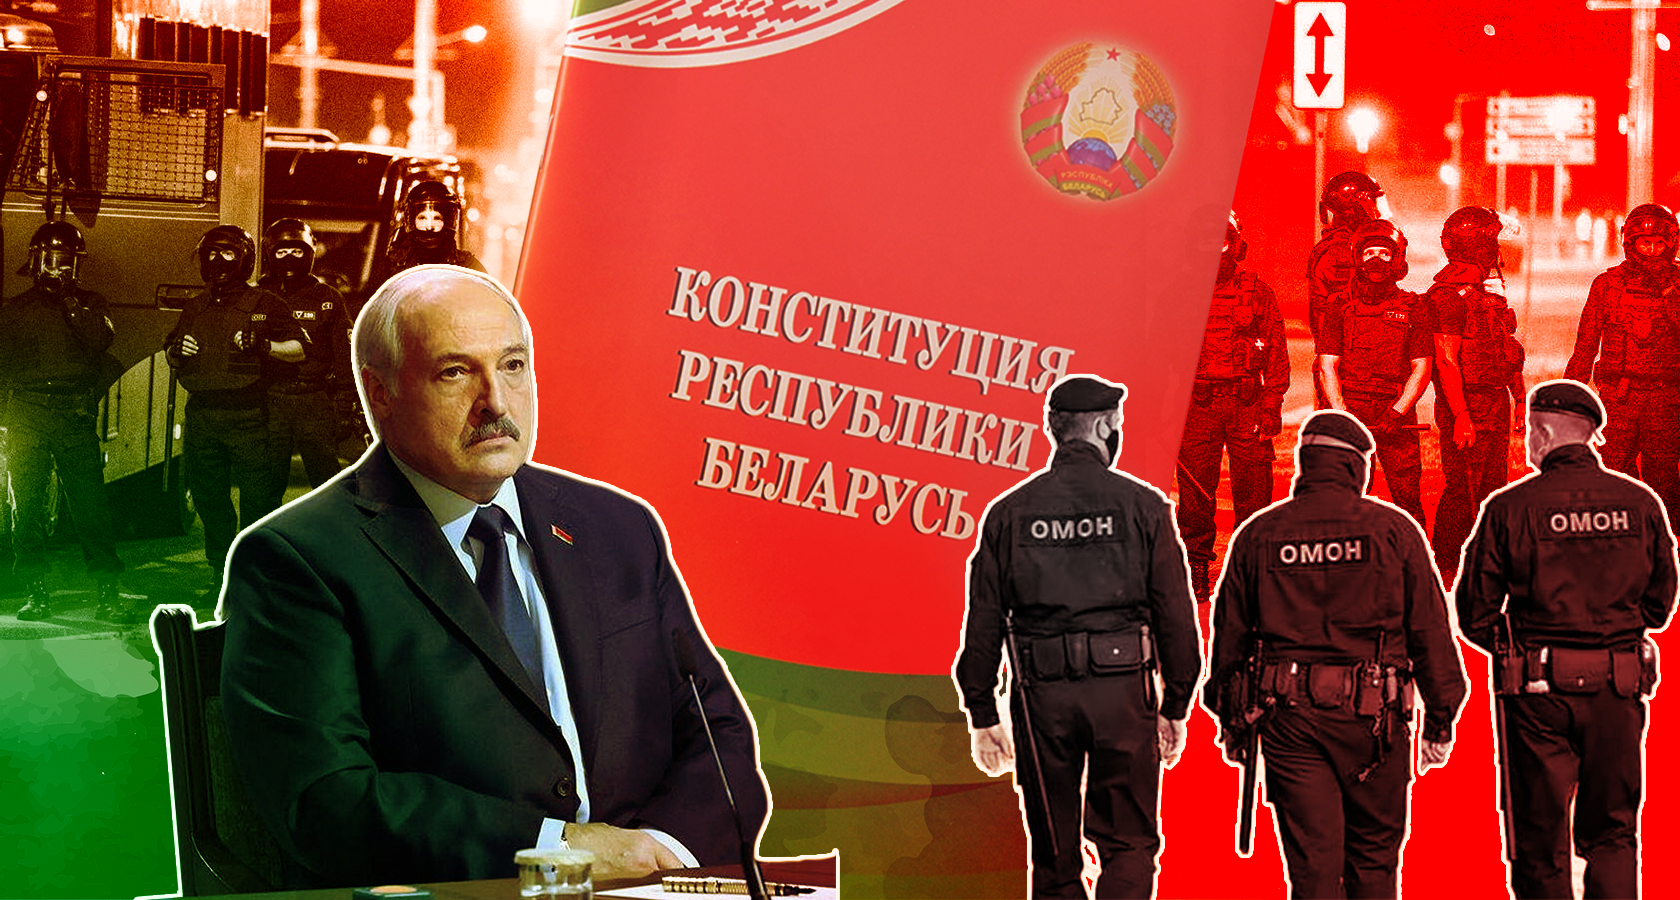 Ядерное оружие, российские войны и власть до 2035 года. Зачем Лукашенко меняет конституцию - Фото